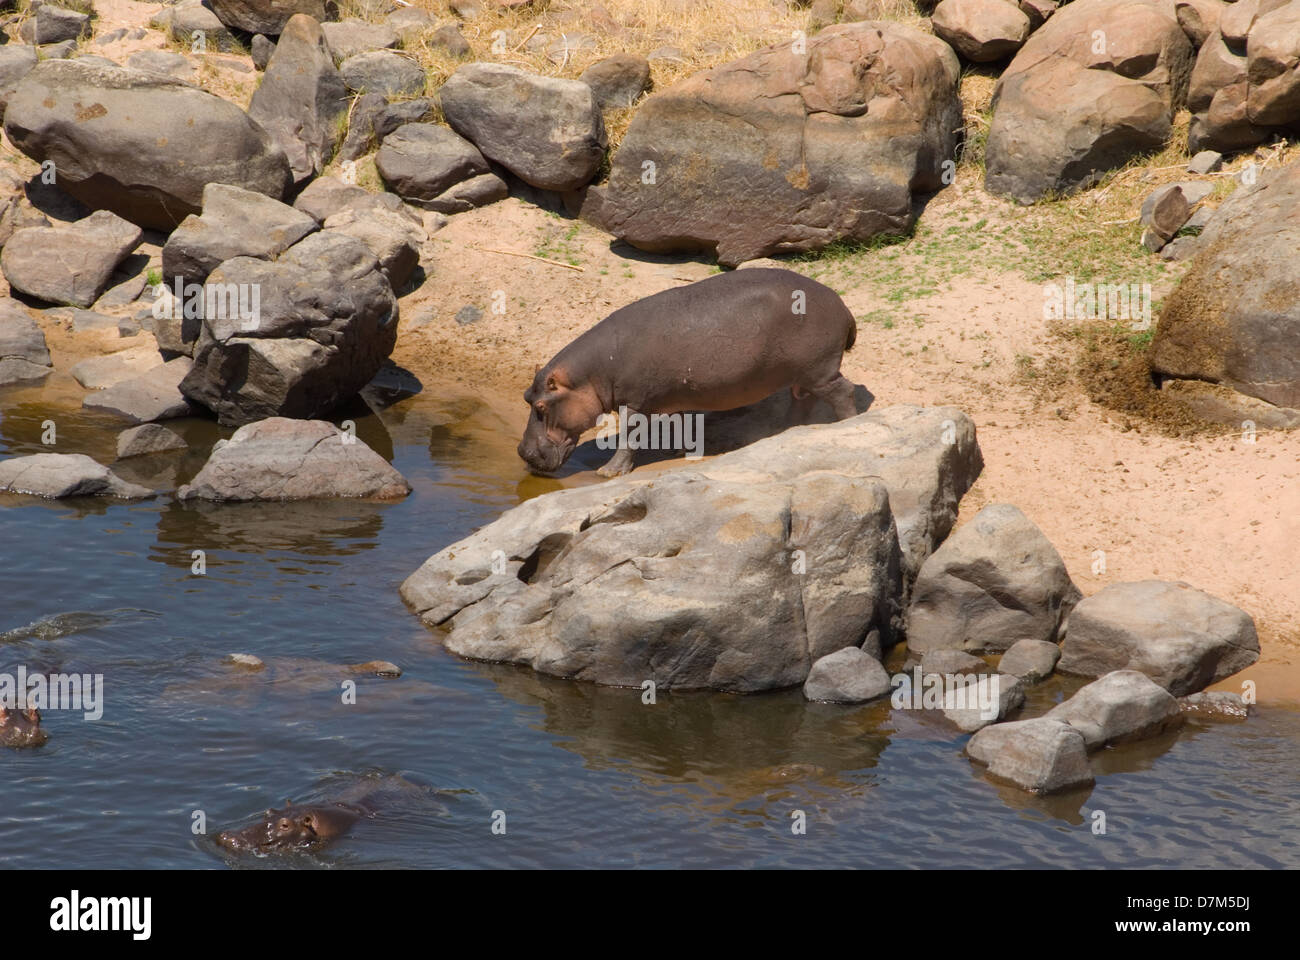 Hipopótamo regresar al agua después de relevar a la orilla Foto de stock